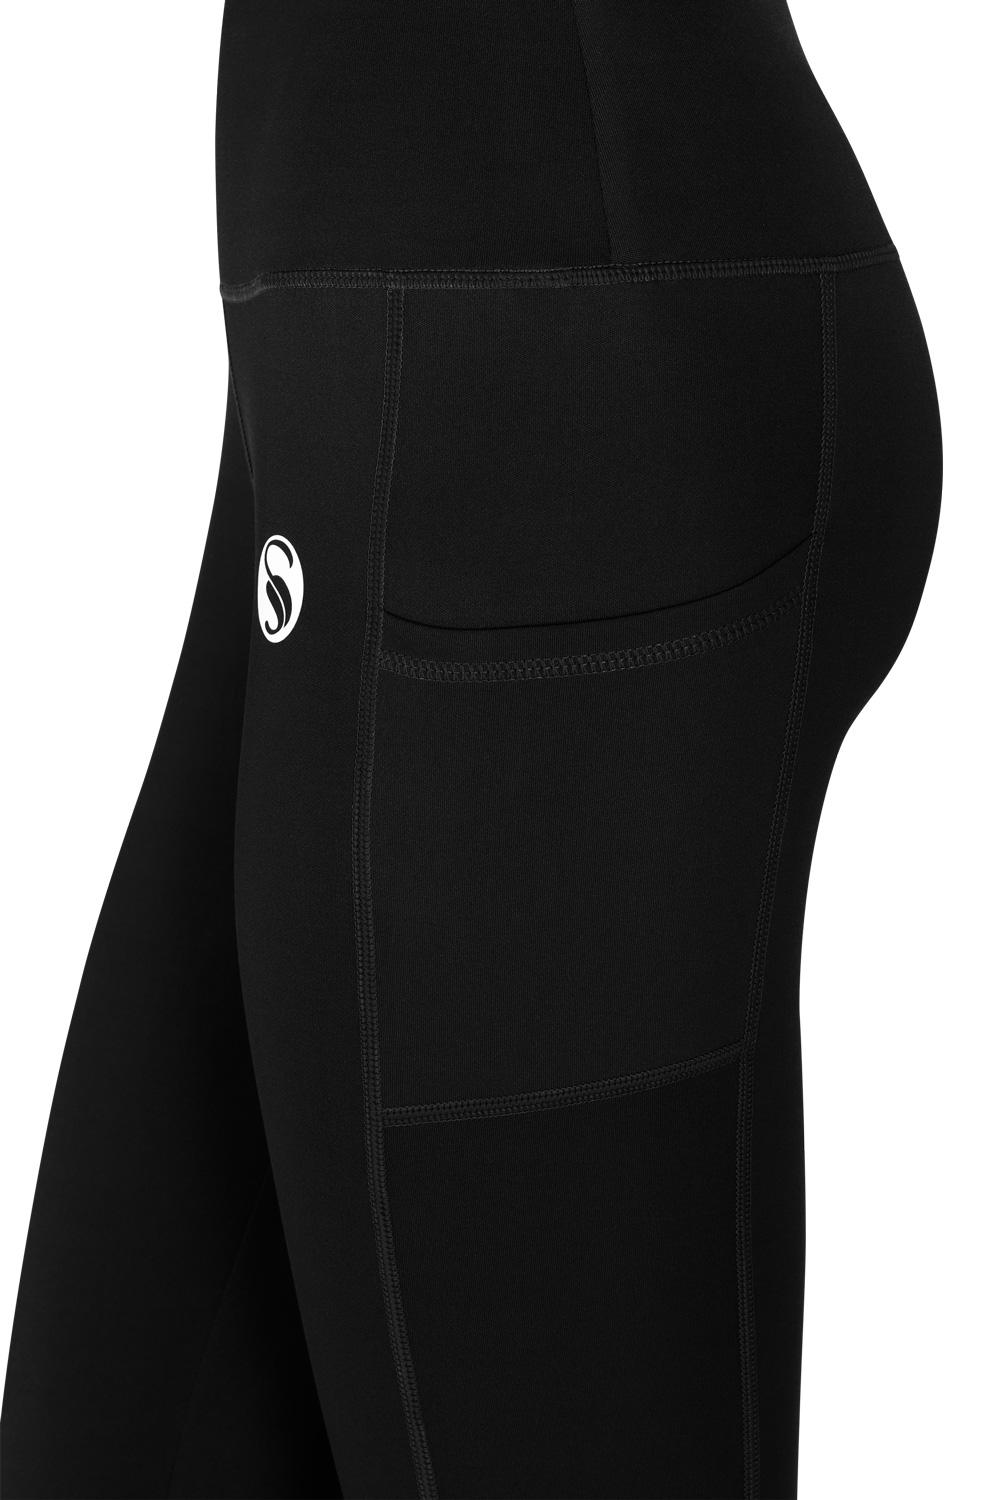 Stark Soul® vielseitige, funktionale Damen Sport Leggings mit Taschen |  Stark Soul International